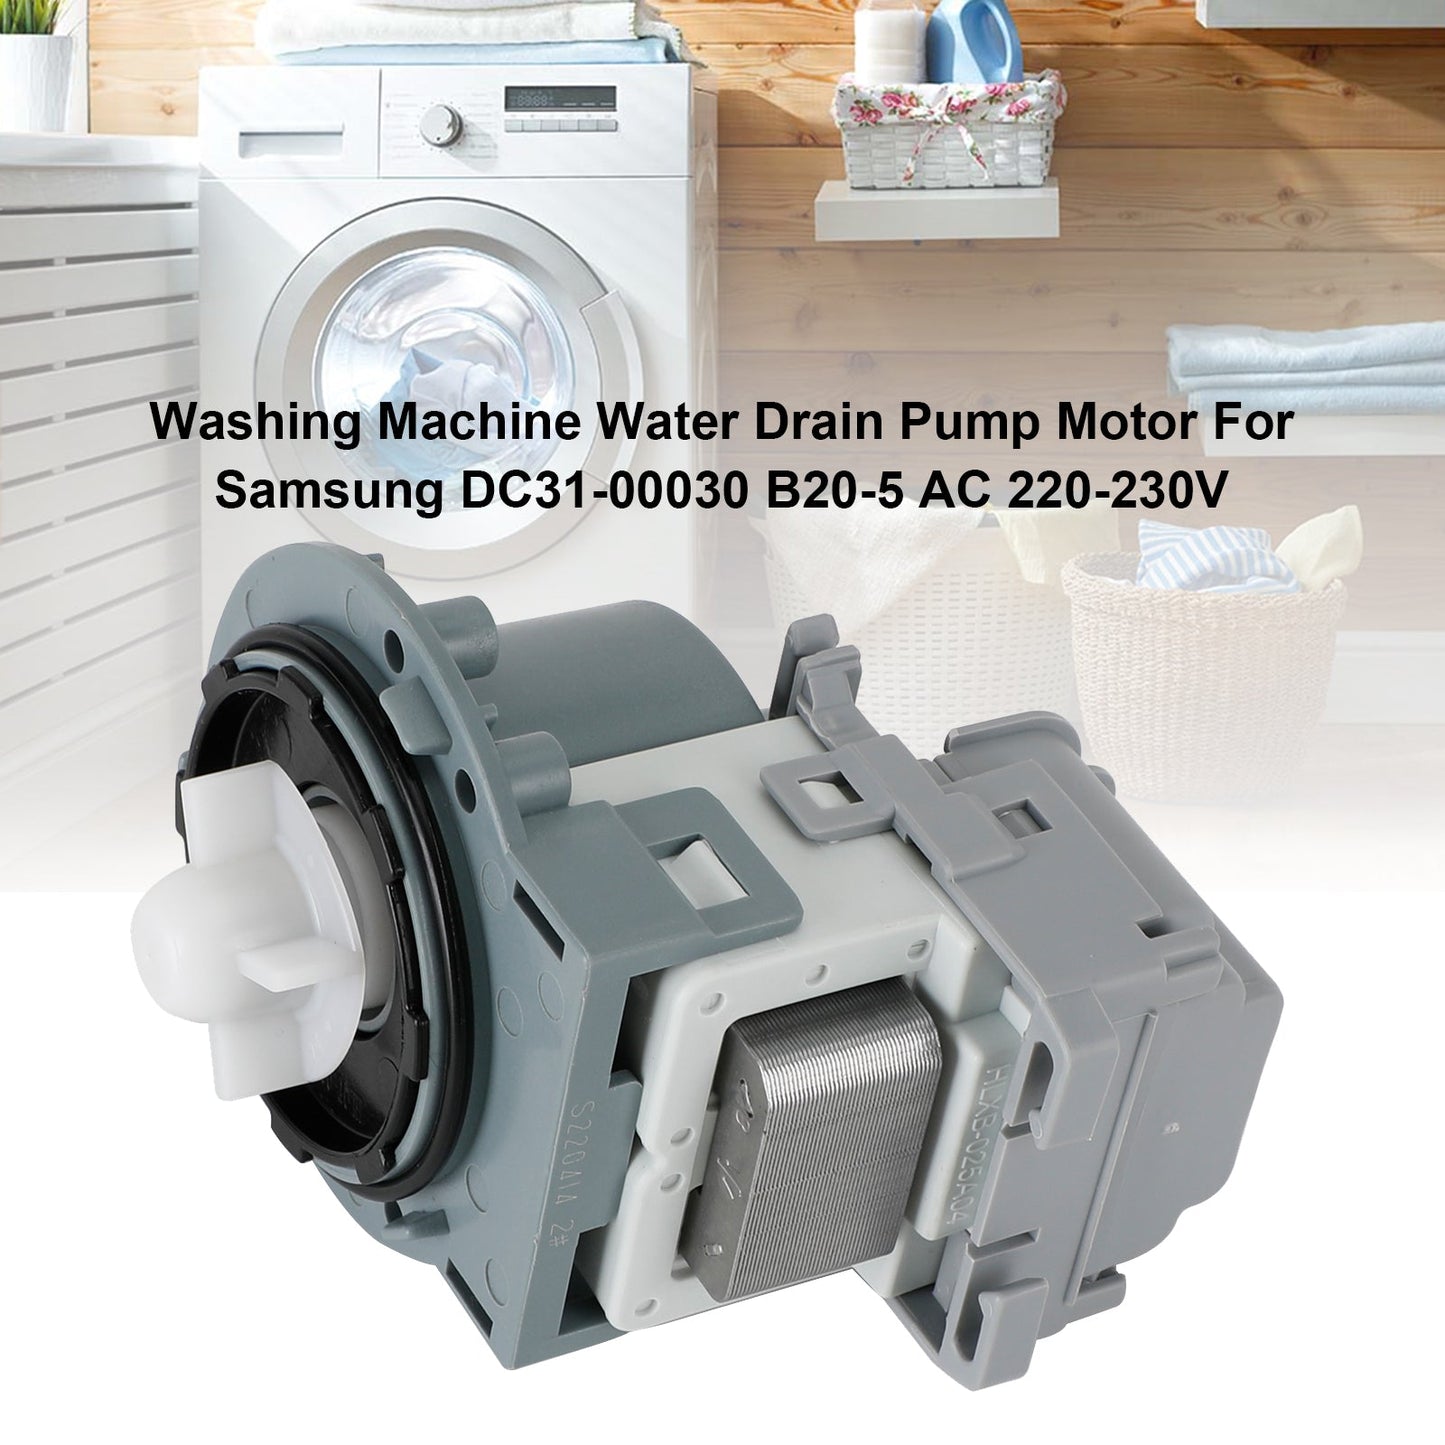 Waschmaschinen-Wasserablaufpumpenmotor für Samsung DC31-00030 B20-5 AC 220-230V